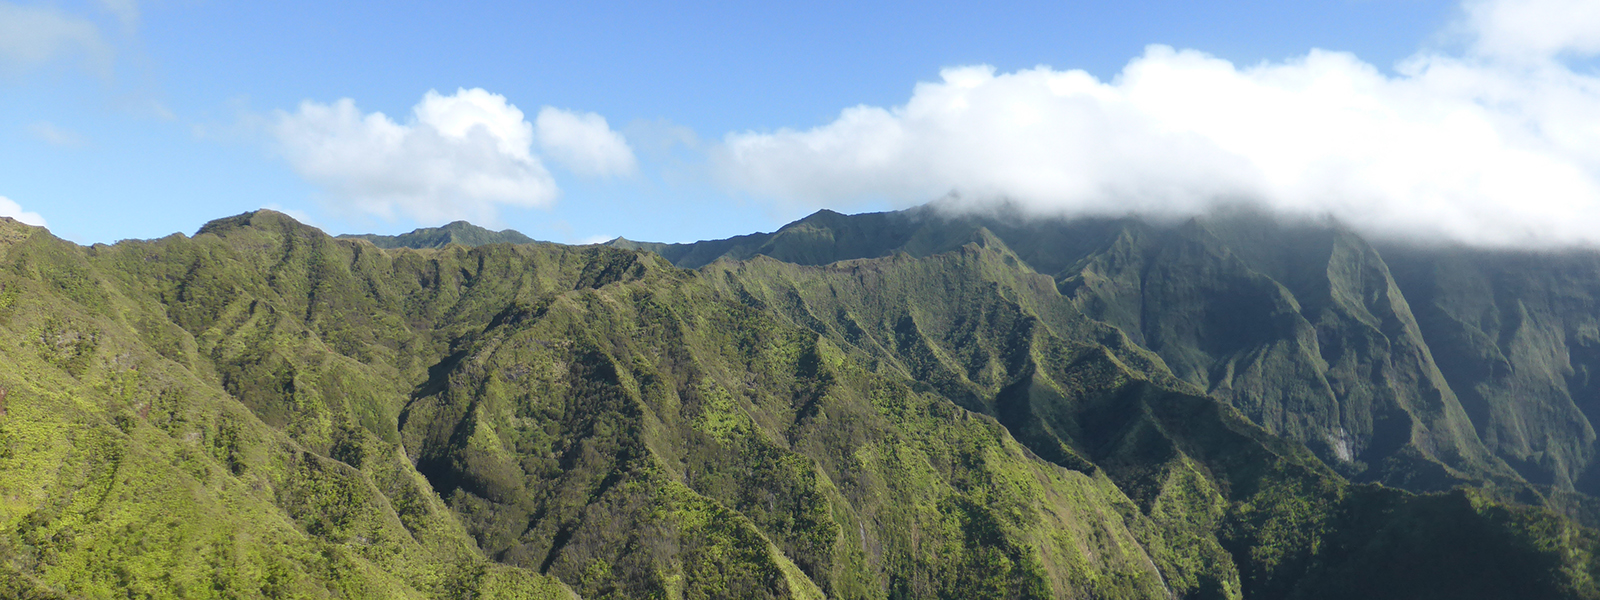 view from mountain top landing zone Kauai